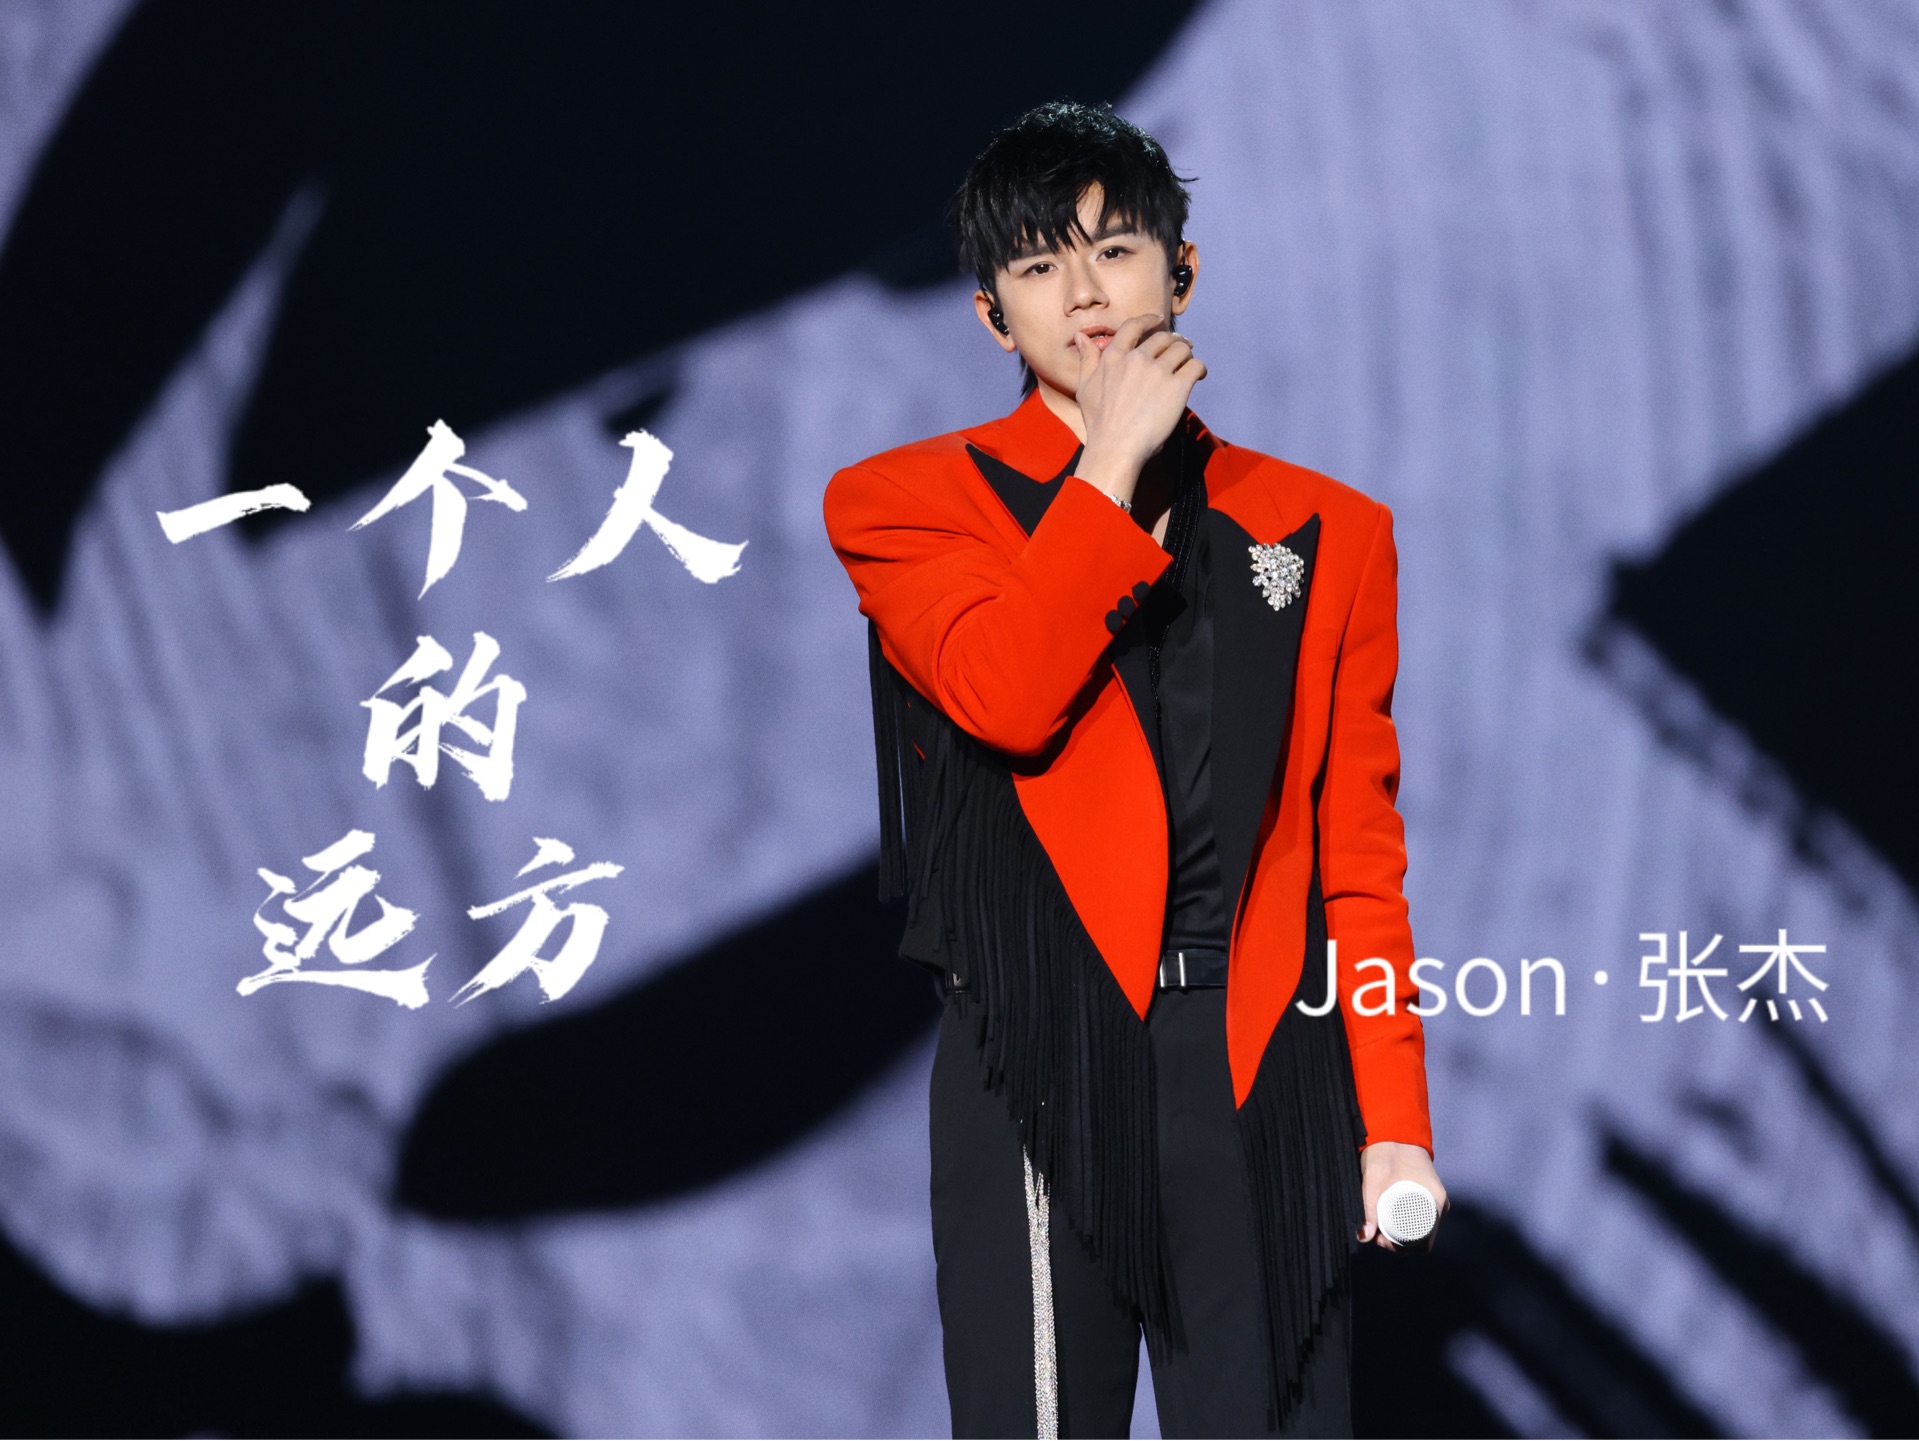 【张杰】上海演唱会首唱《一个人的远方》高清近景加字幕